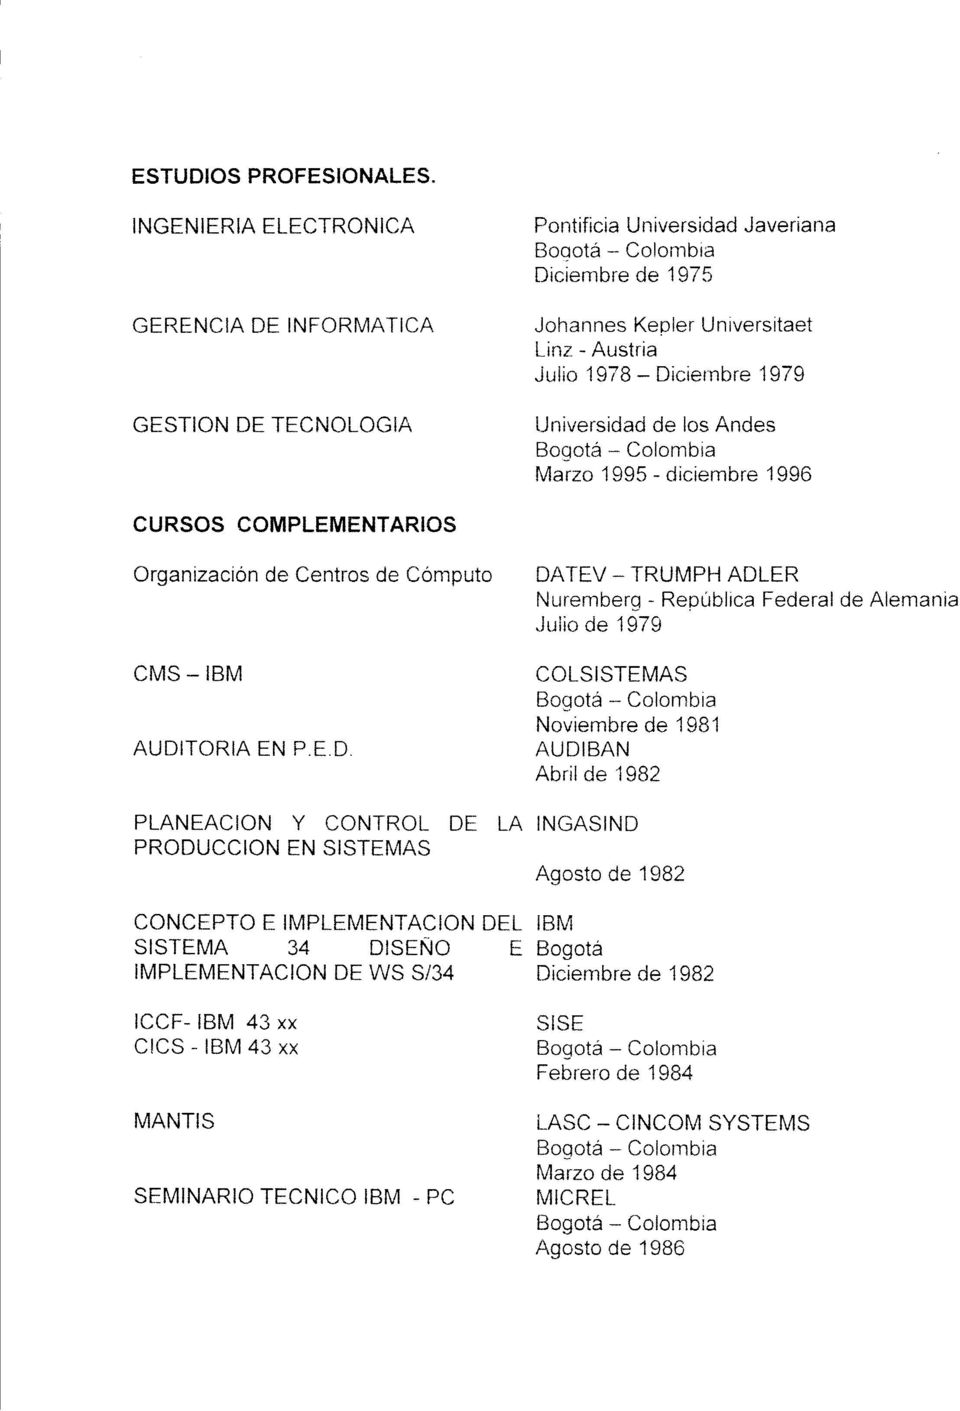 TECNOLOGIA Universidad de los Andes Bogotá - Colombia Marzo 1995 - diciembre 1996 CURSOS COMPLEMENTARIOS Organización de Centros de Cómputo DA TEV - TRUMPH ADLER Nuremberg - República Federal de